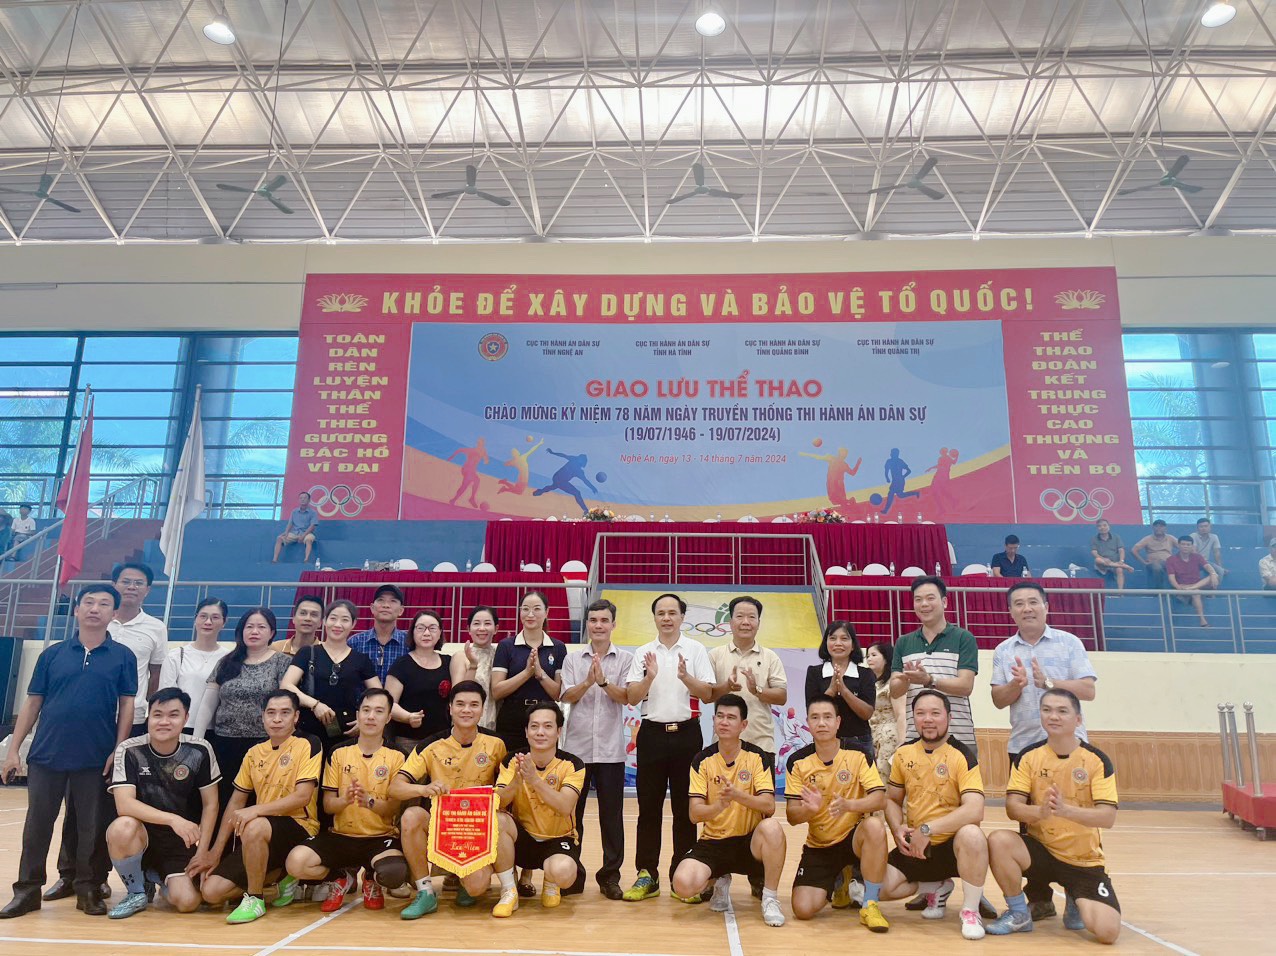 Giao lưu thể thao 4 tỉnh Nghệ An - Hà Tĩnh - Quảng Bình - Quảng Trị chào mừng kỷ niệm 78 năm ngày truyền thống THADS (19/7/1946 - 19/7/2024) 3